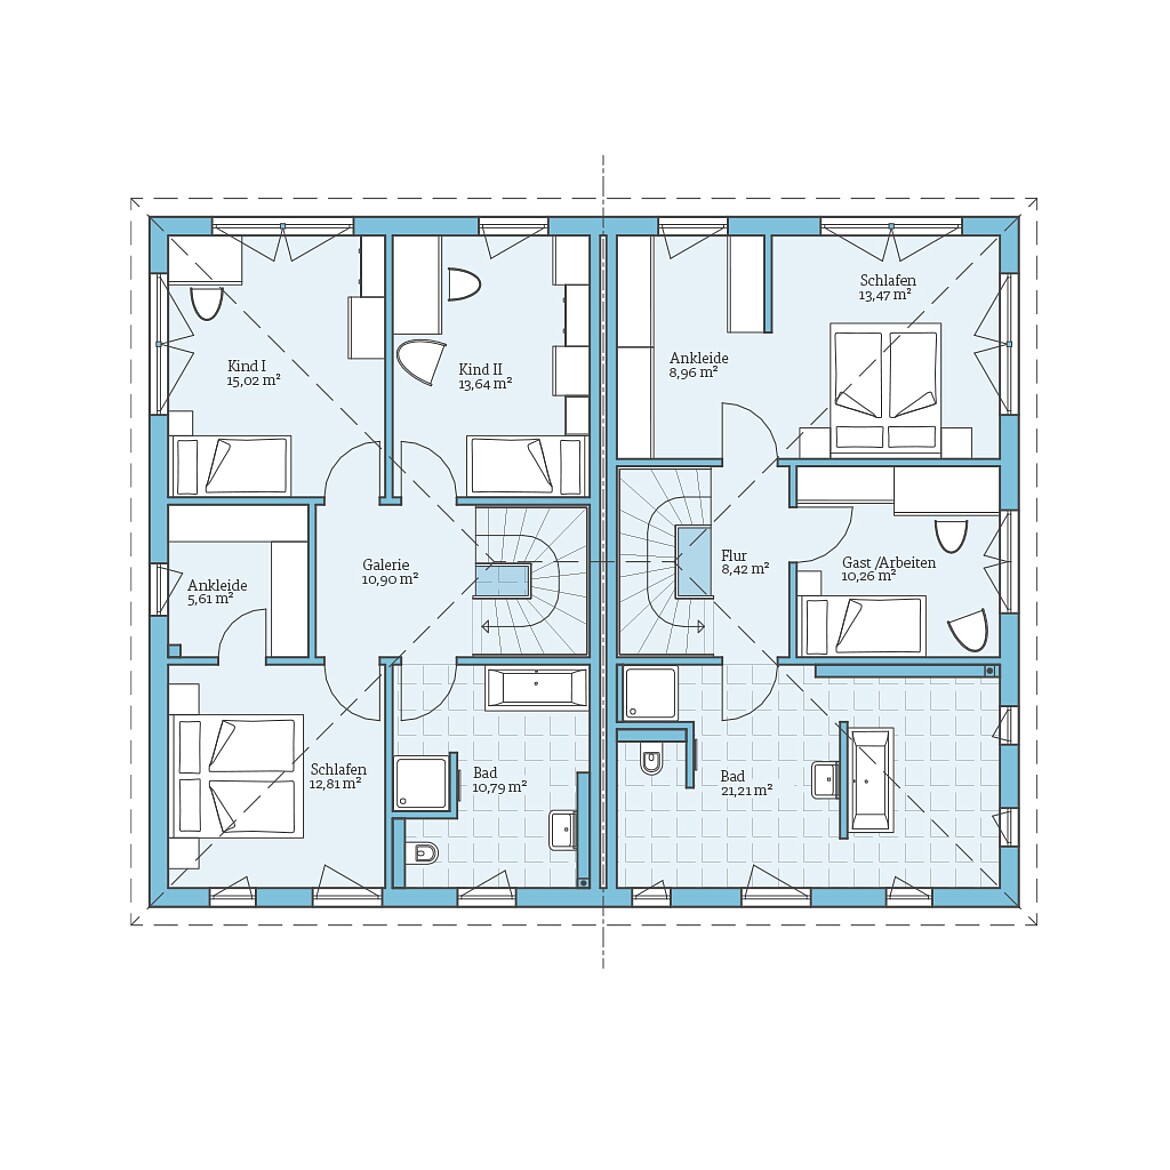 Prefabricated semi-detached house 137/126: Floor plan upper floor